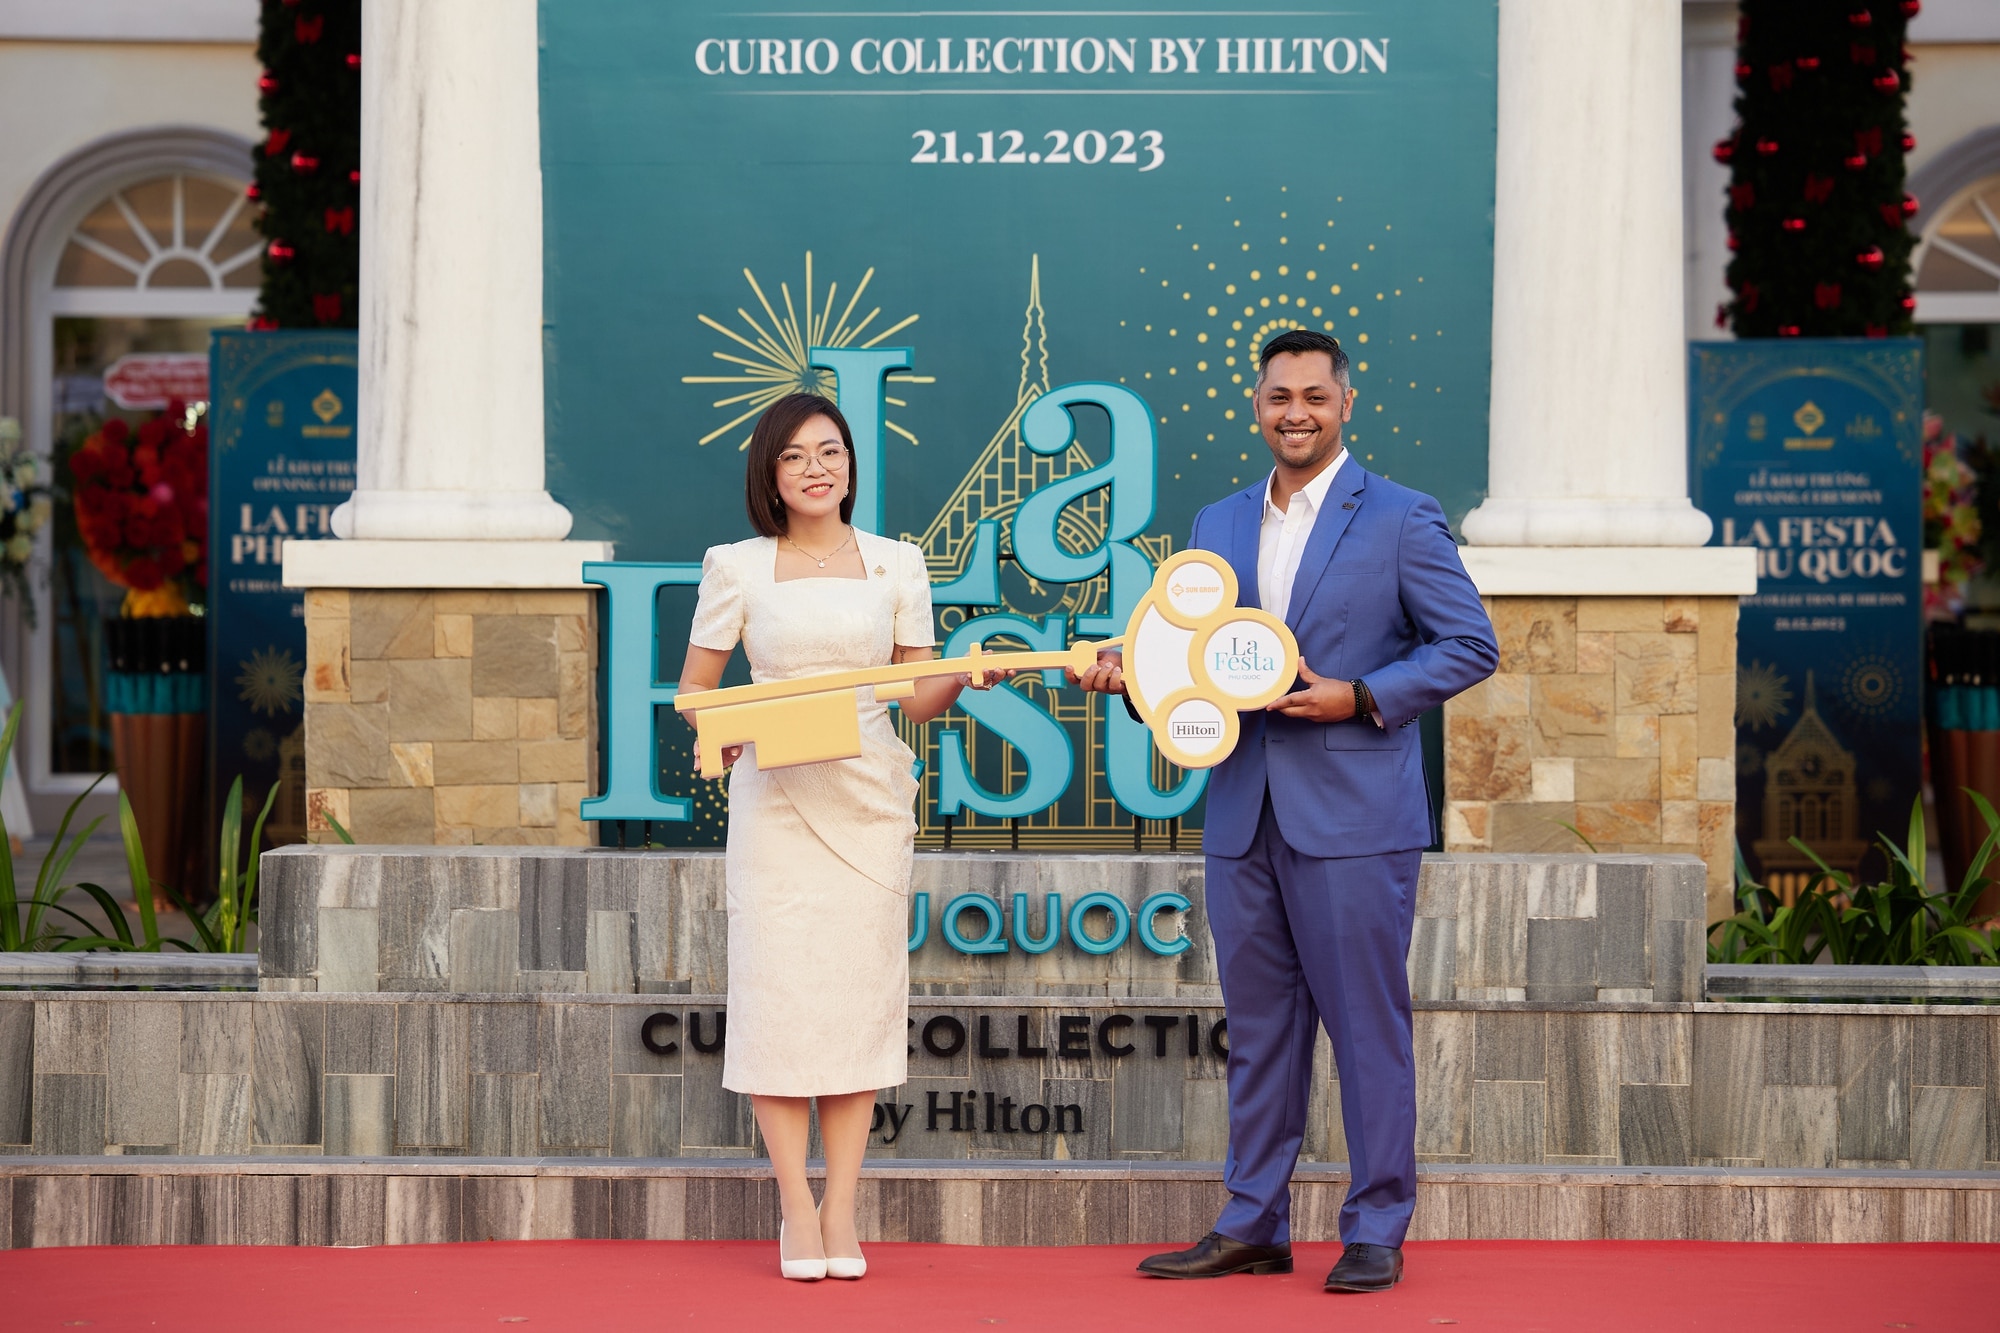 'Siêu phẩm' Curio Collection by Hilton đầu tiên của Việt Nam chính thức khai trương tại Phú Quốc- Ảnh 1.